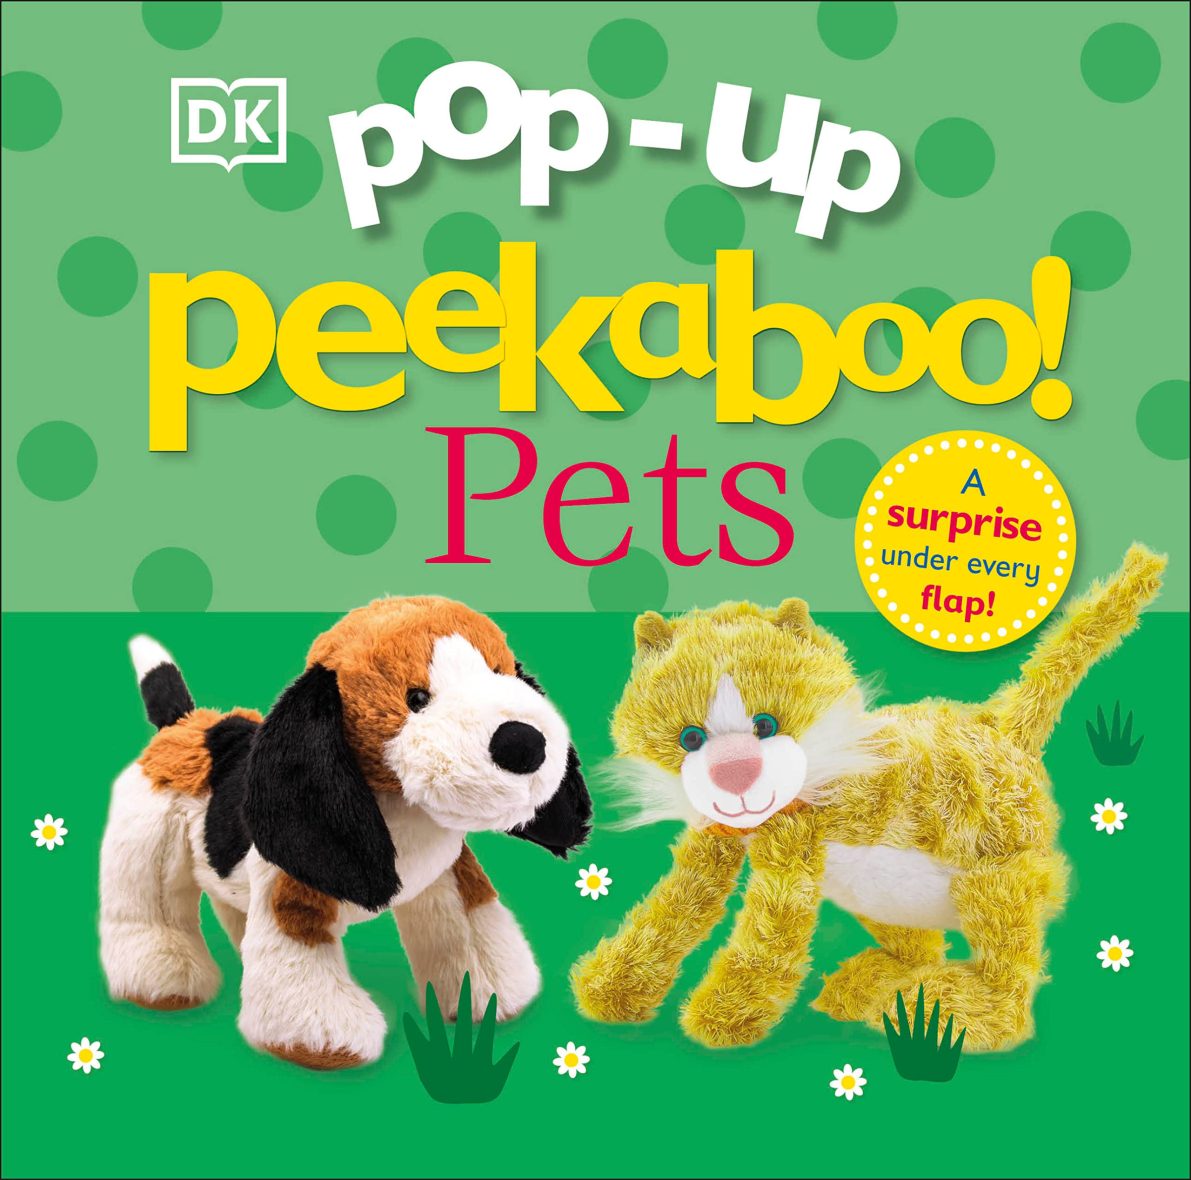 DK Pop-Up Peekaboo! Pets